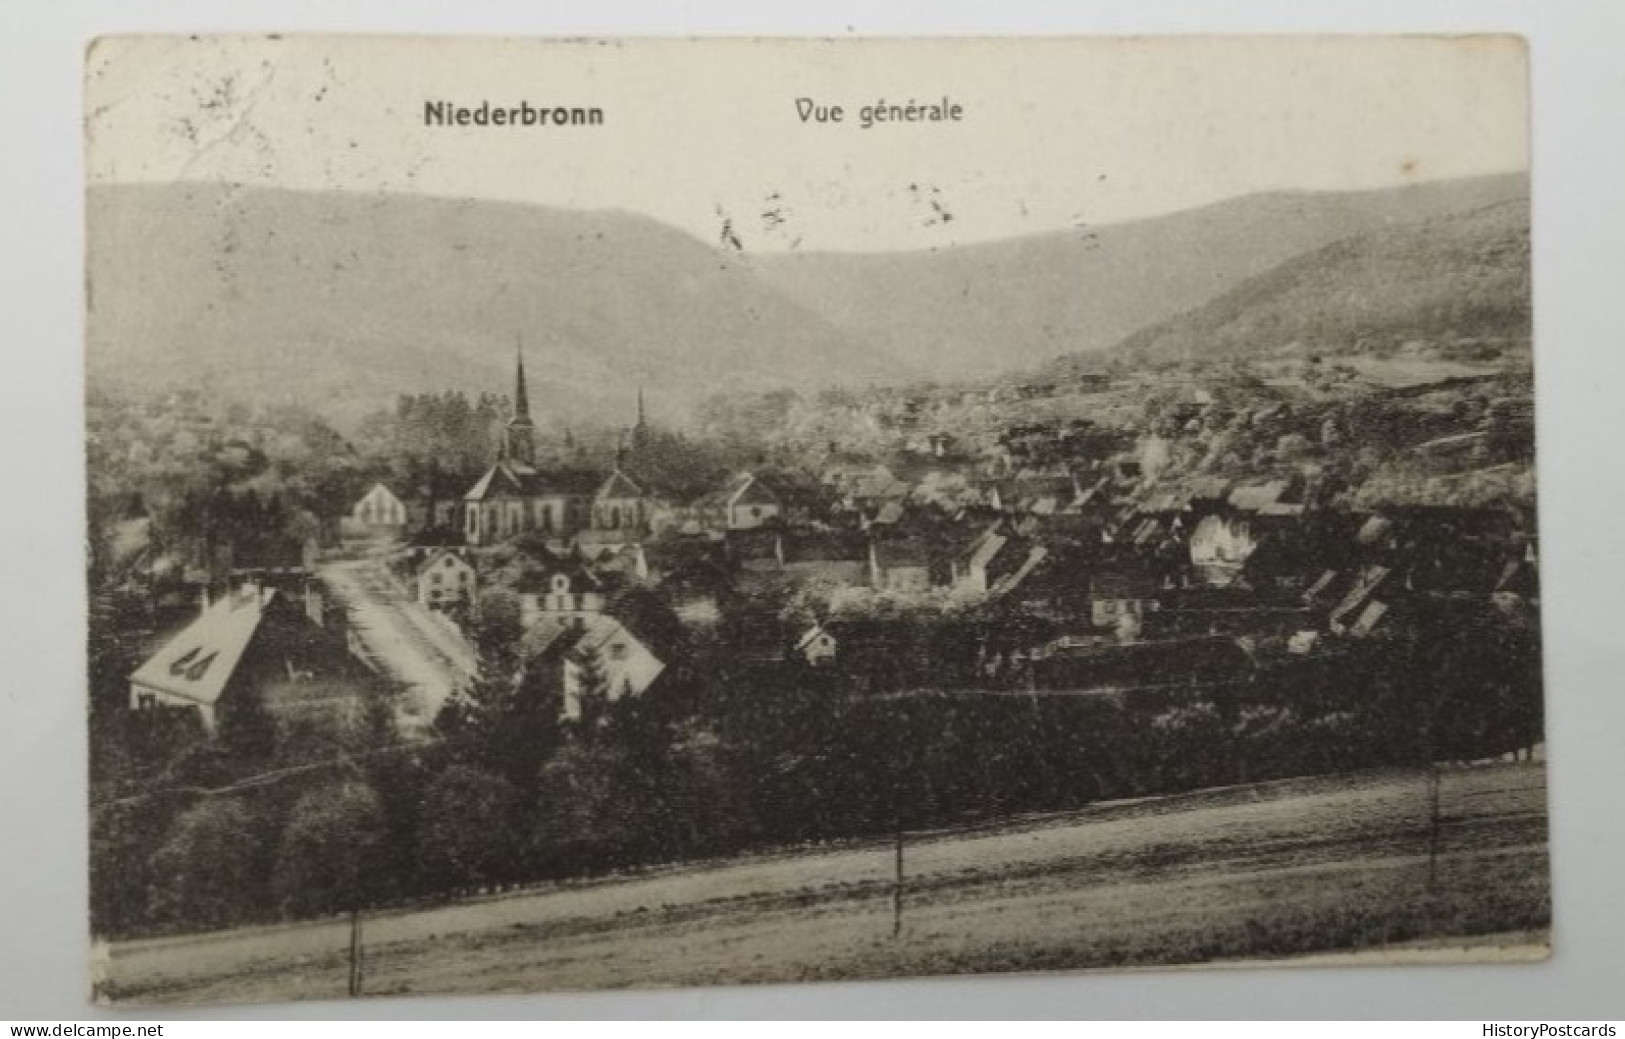 Niederbronn, Elsas-Lothringen, Gesamtansicht, 1913 - Elsass